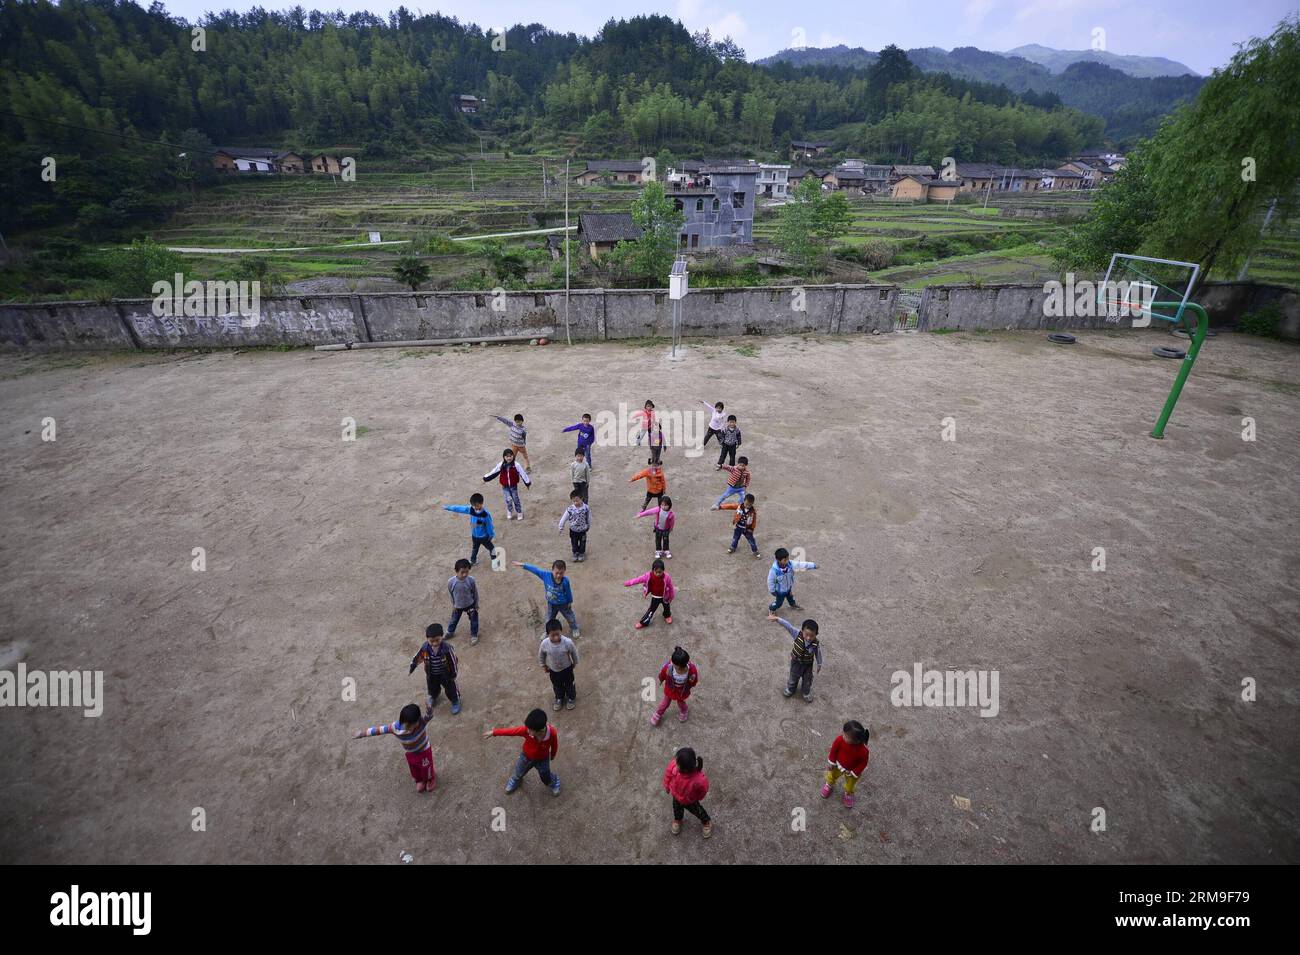 Gli studenti fanno esercizi fisici nel parco giochi della Liyuan Elementary School nel villaggio di Xikeng sotto la contea di Wanzai di Yichun, nella provincia orientale del Jiangxi della Cina, 20 maggio 2014. La mancanza di insegnanti qualificati è stata un problema onnipresente che affligge molte scuole elementari della Cina rurale. Le autorità educative della contea di Wanzai hanno lanciato un programma di formazione per insegnanti quinquennale nel 2014 per soddisfare la domanda di insegnanti nelle aree rurali della contea. Ogni anno, il programma riceverà 30 candidati junior-high provenienti da zone rurali. La metà dei richiedenti è tenuta a lavorare nelle scuole rurali quando t Foto Stock